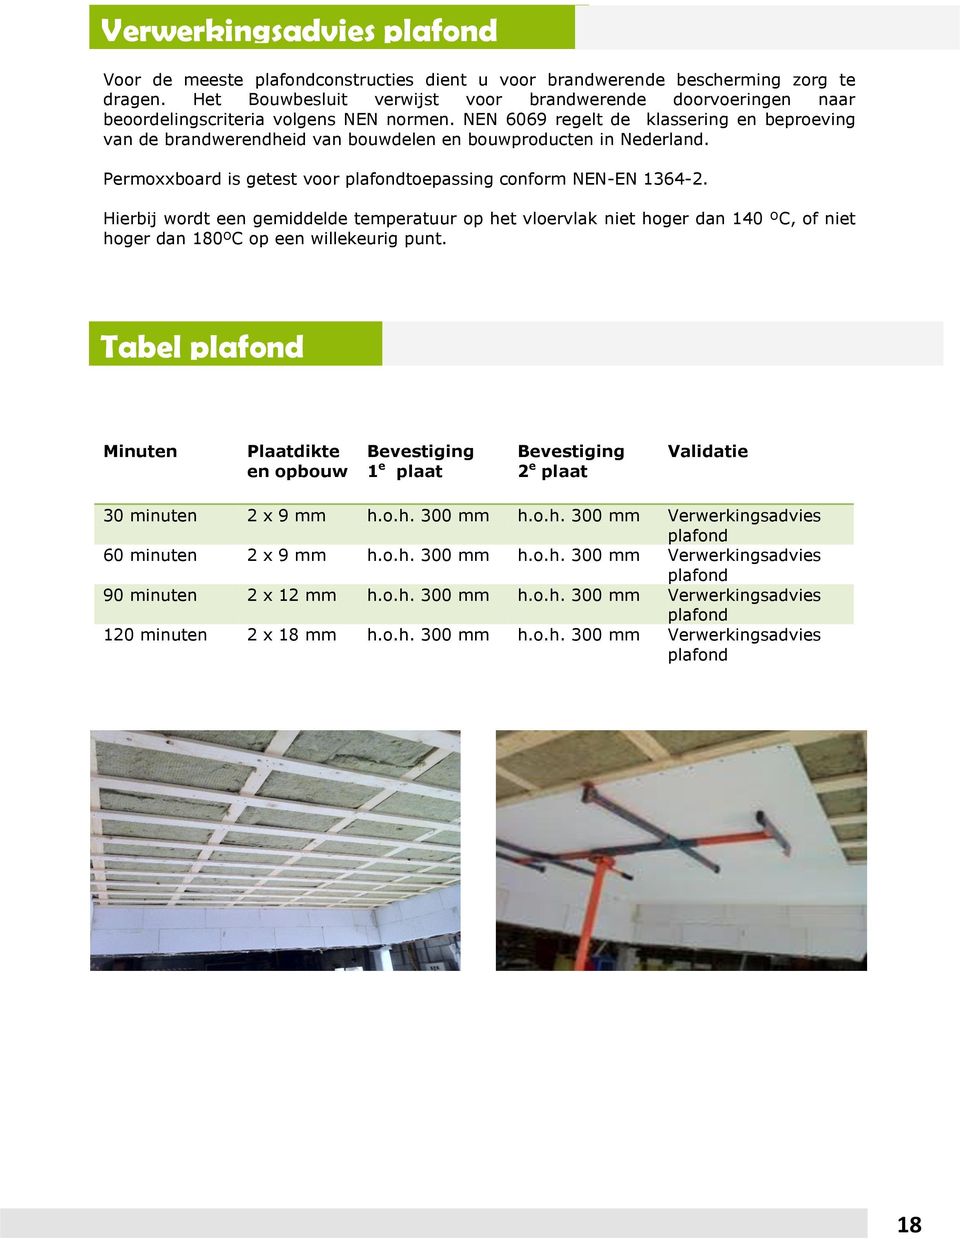 NEN 6069 regelt de klassering en beproeving van de brandwerendheid van bouwdelen en bouwproducten in Nederland. Permoxxboard is getest voor plafondtoepassing conform NEN-EN 1364-2.